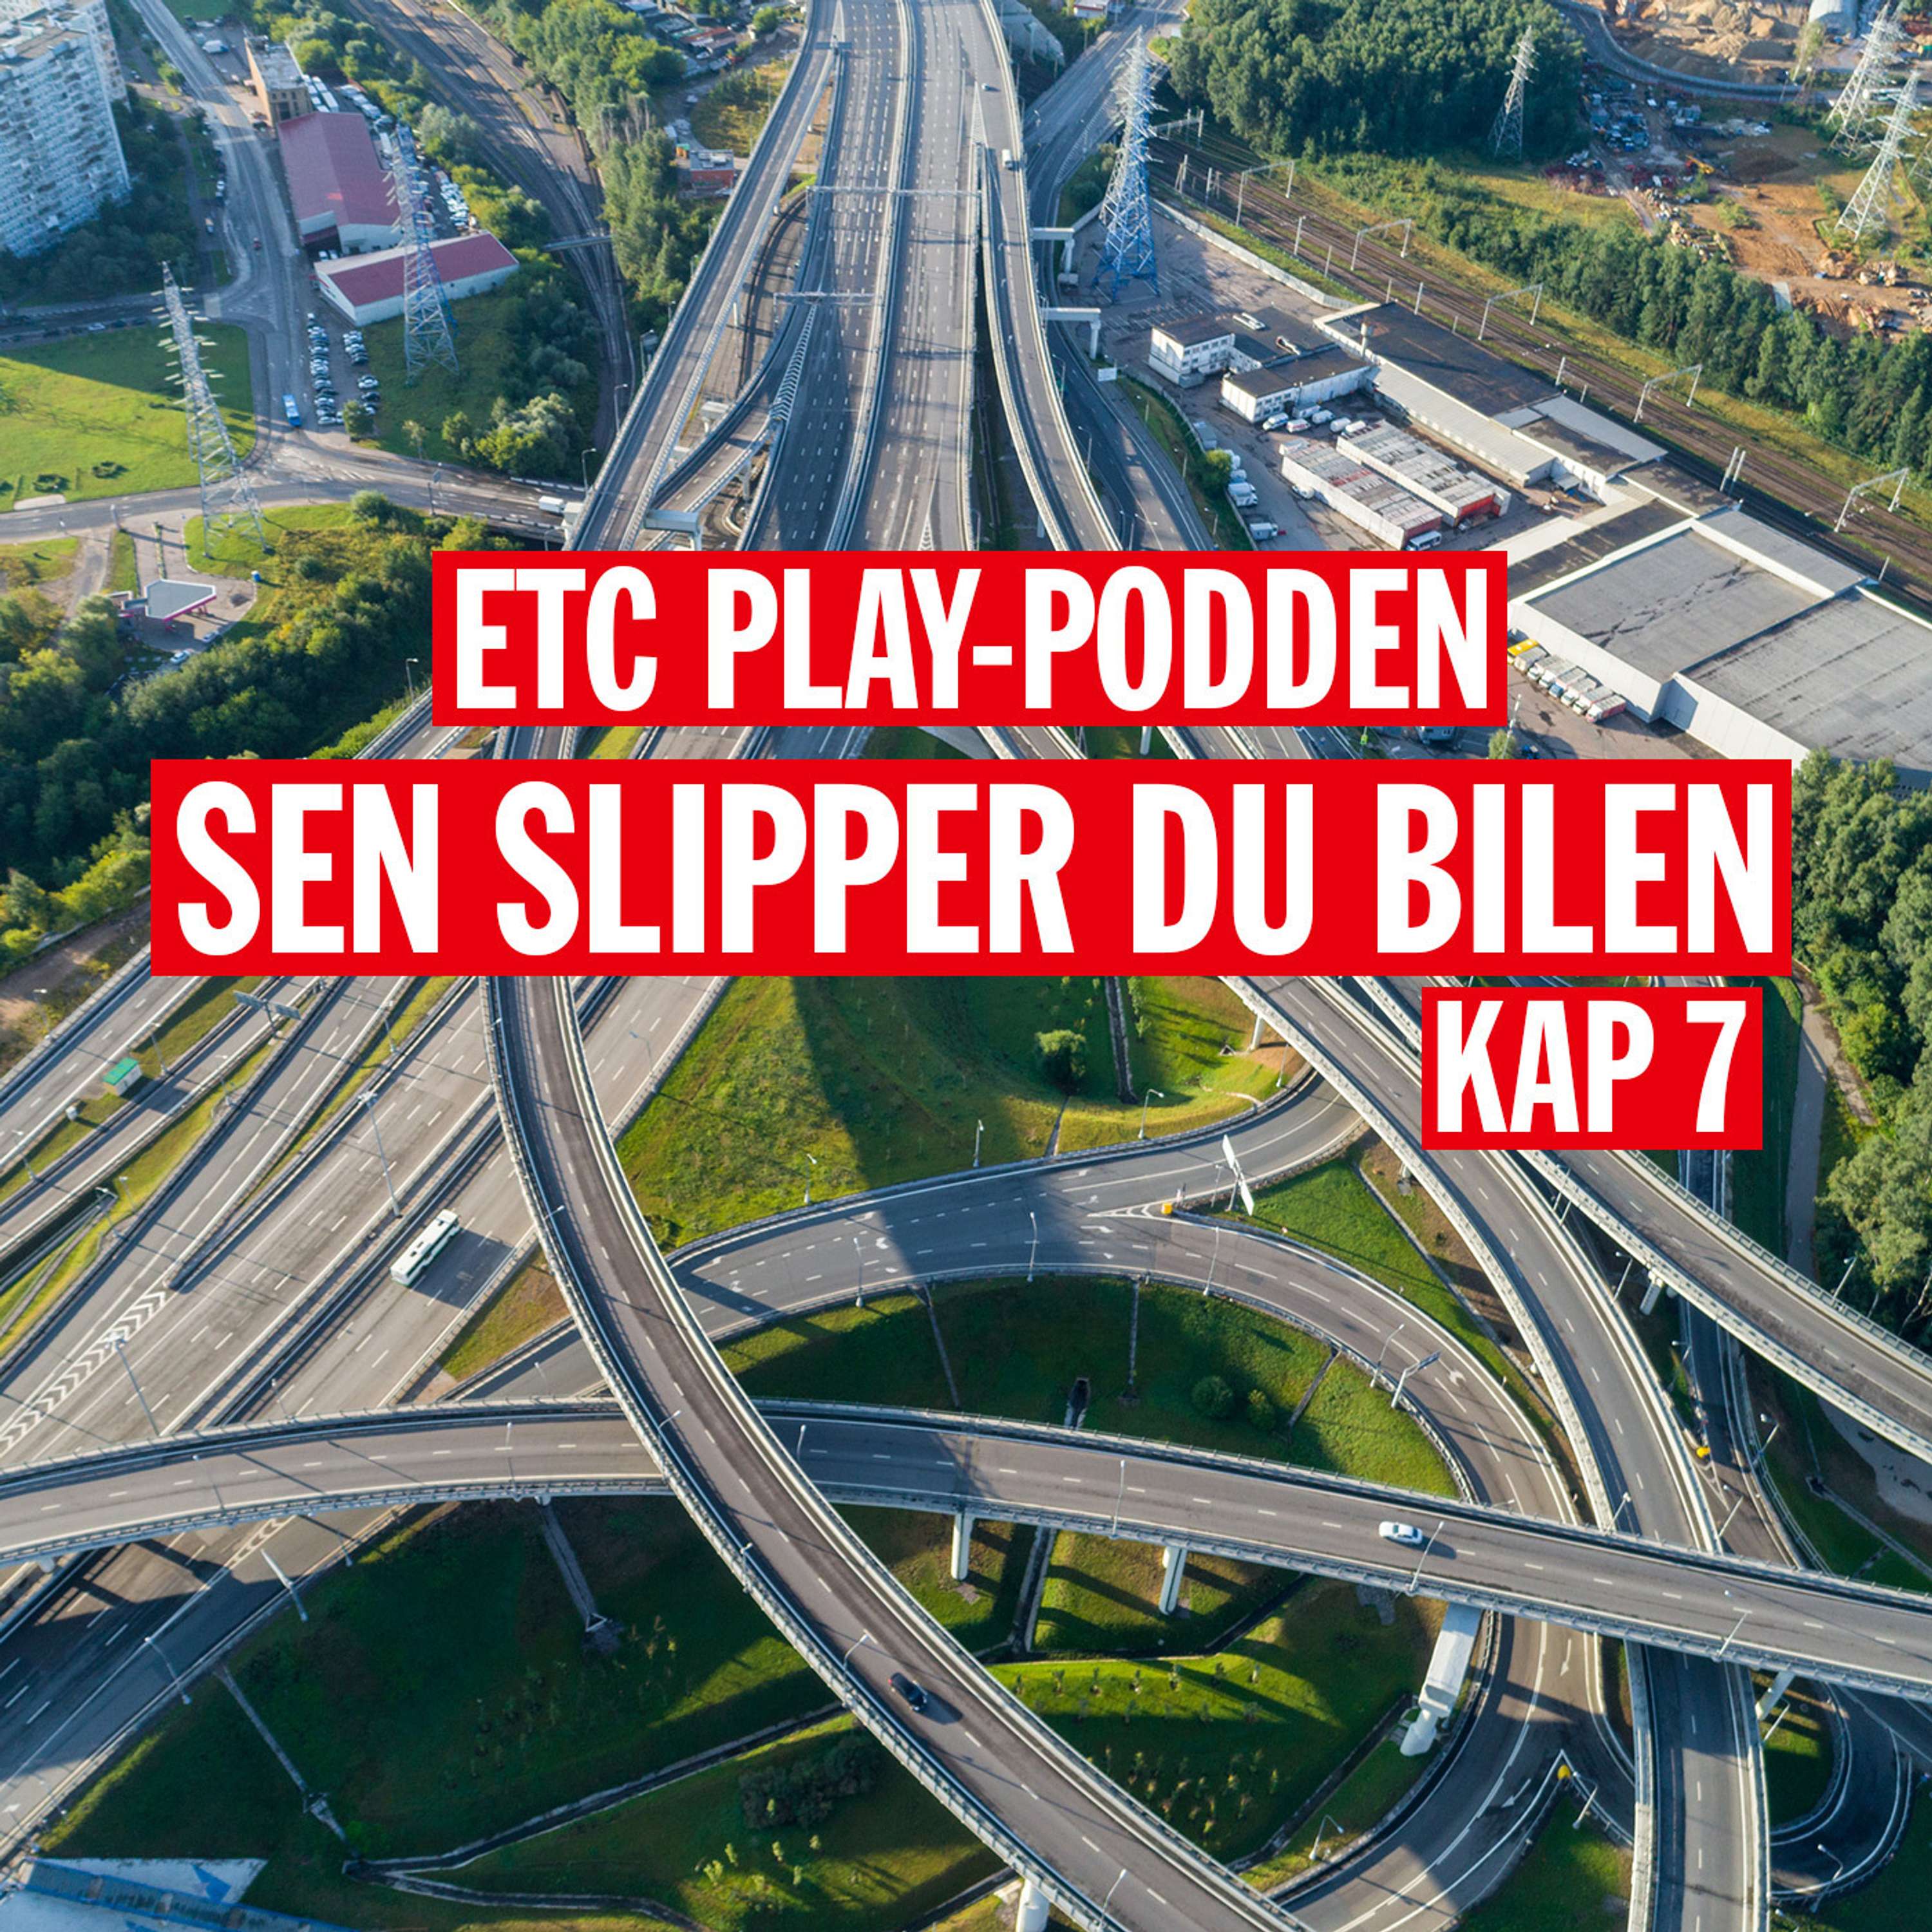 Hoppet-podden | Kap 7: Sen slipper du bilen - Hoppets bokcirkel med Johan Ehrenberg